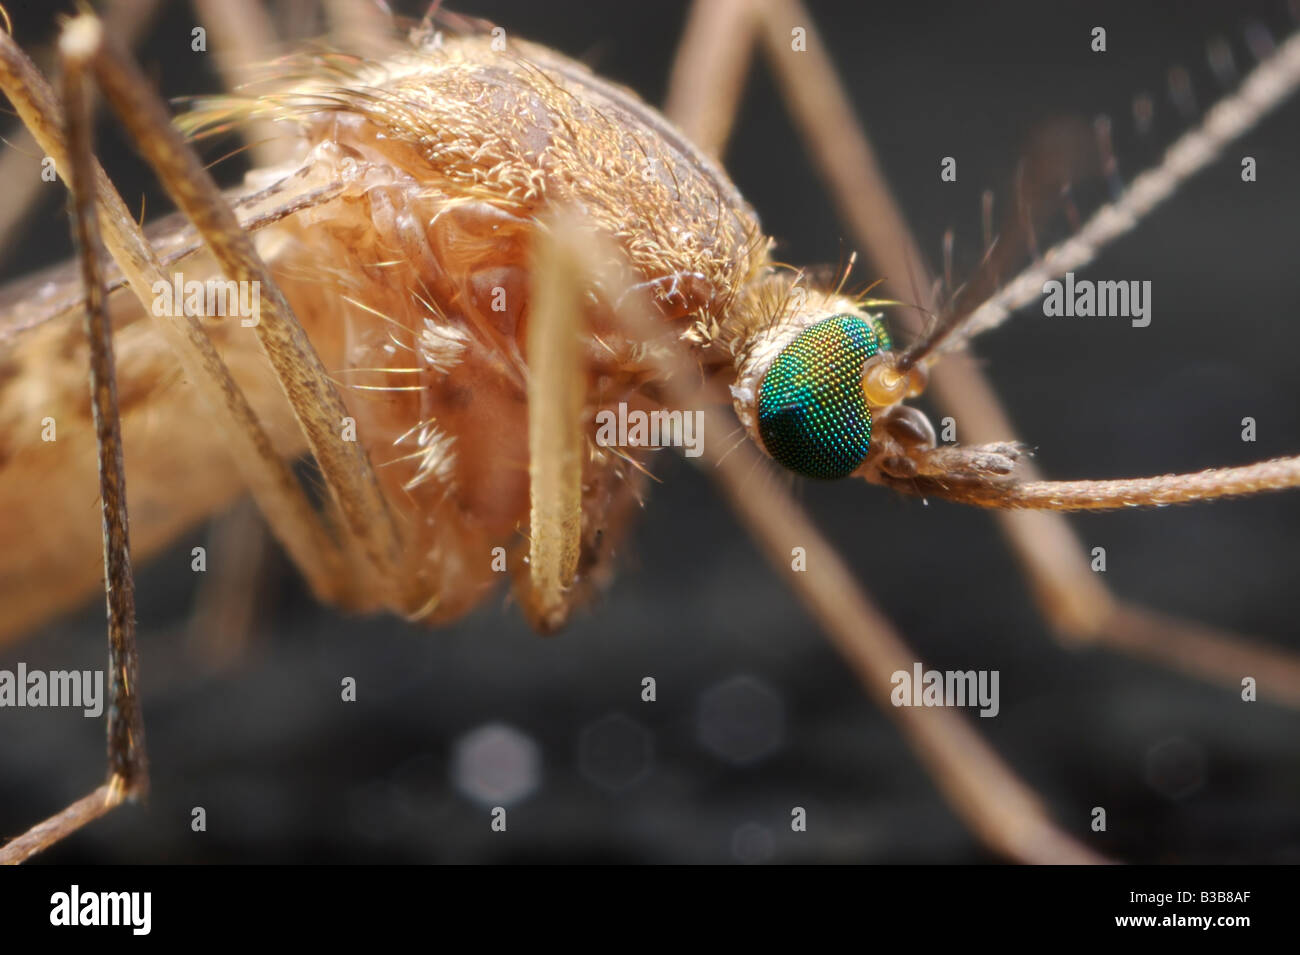 Un estremo dettaglio di una zanzara a circa 5 volte la dimensione di vita. Foto Stock